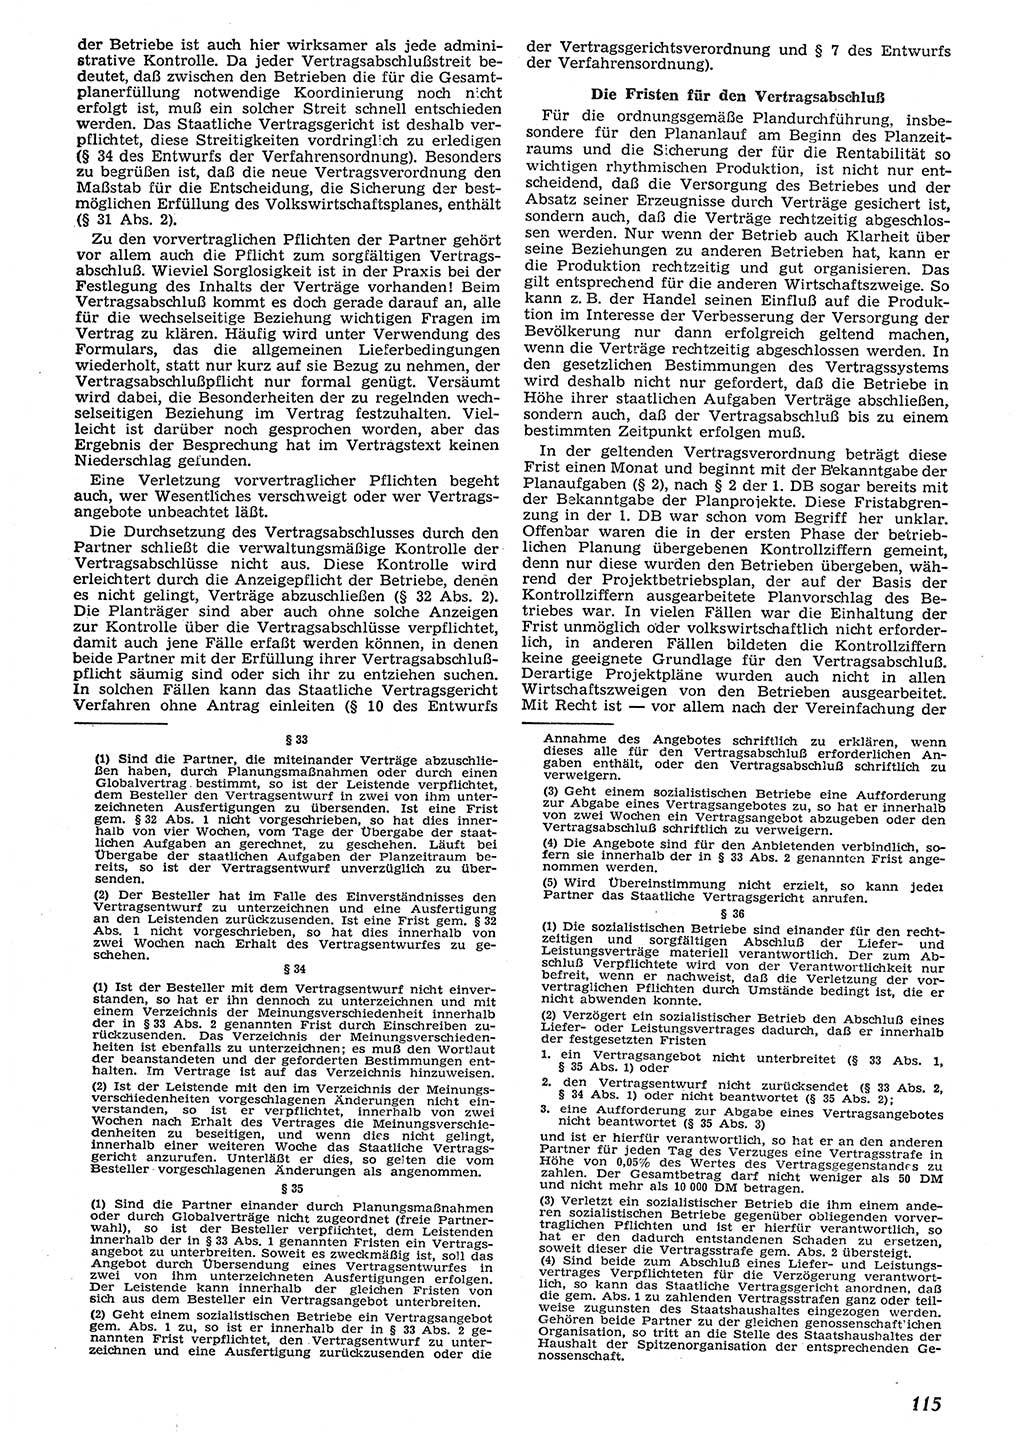 Neue Justiz (NJ), Zeitschrift für Recht und Rechtswissenschaft [Deutsche Demokratische Republik (DDR)], 10. Jahrgang 1956, Seite 115 (NJ DDR 1956, S. 115)